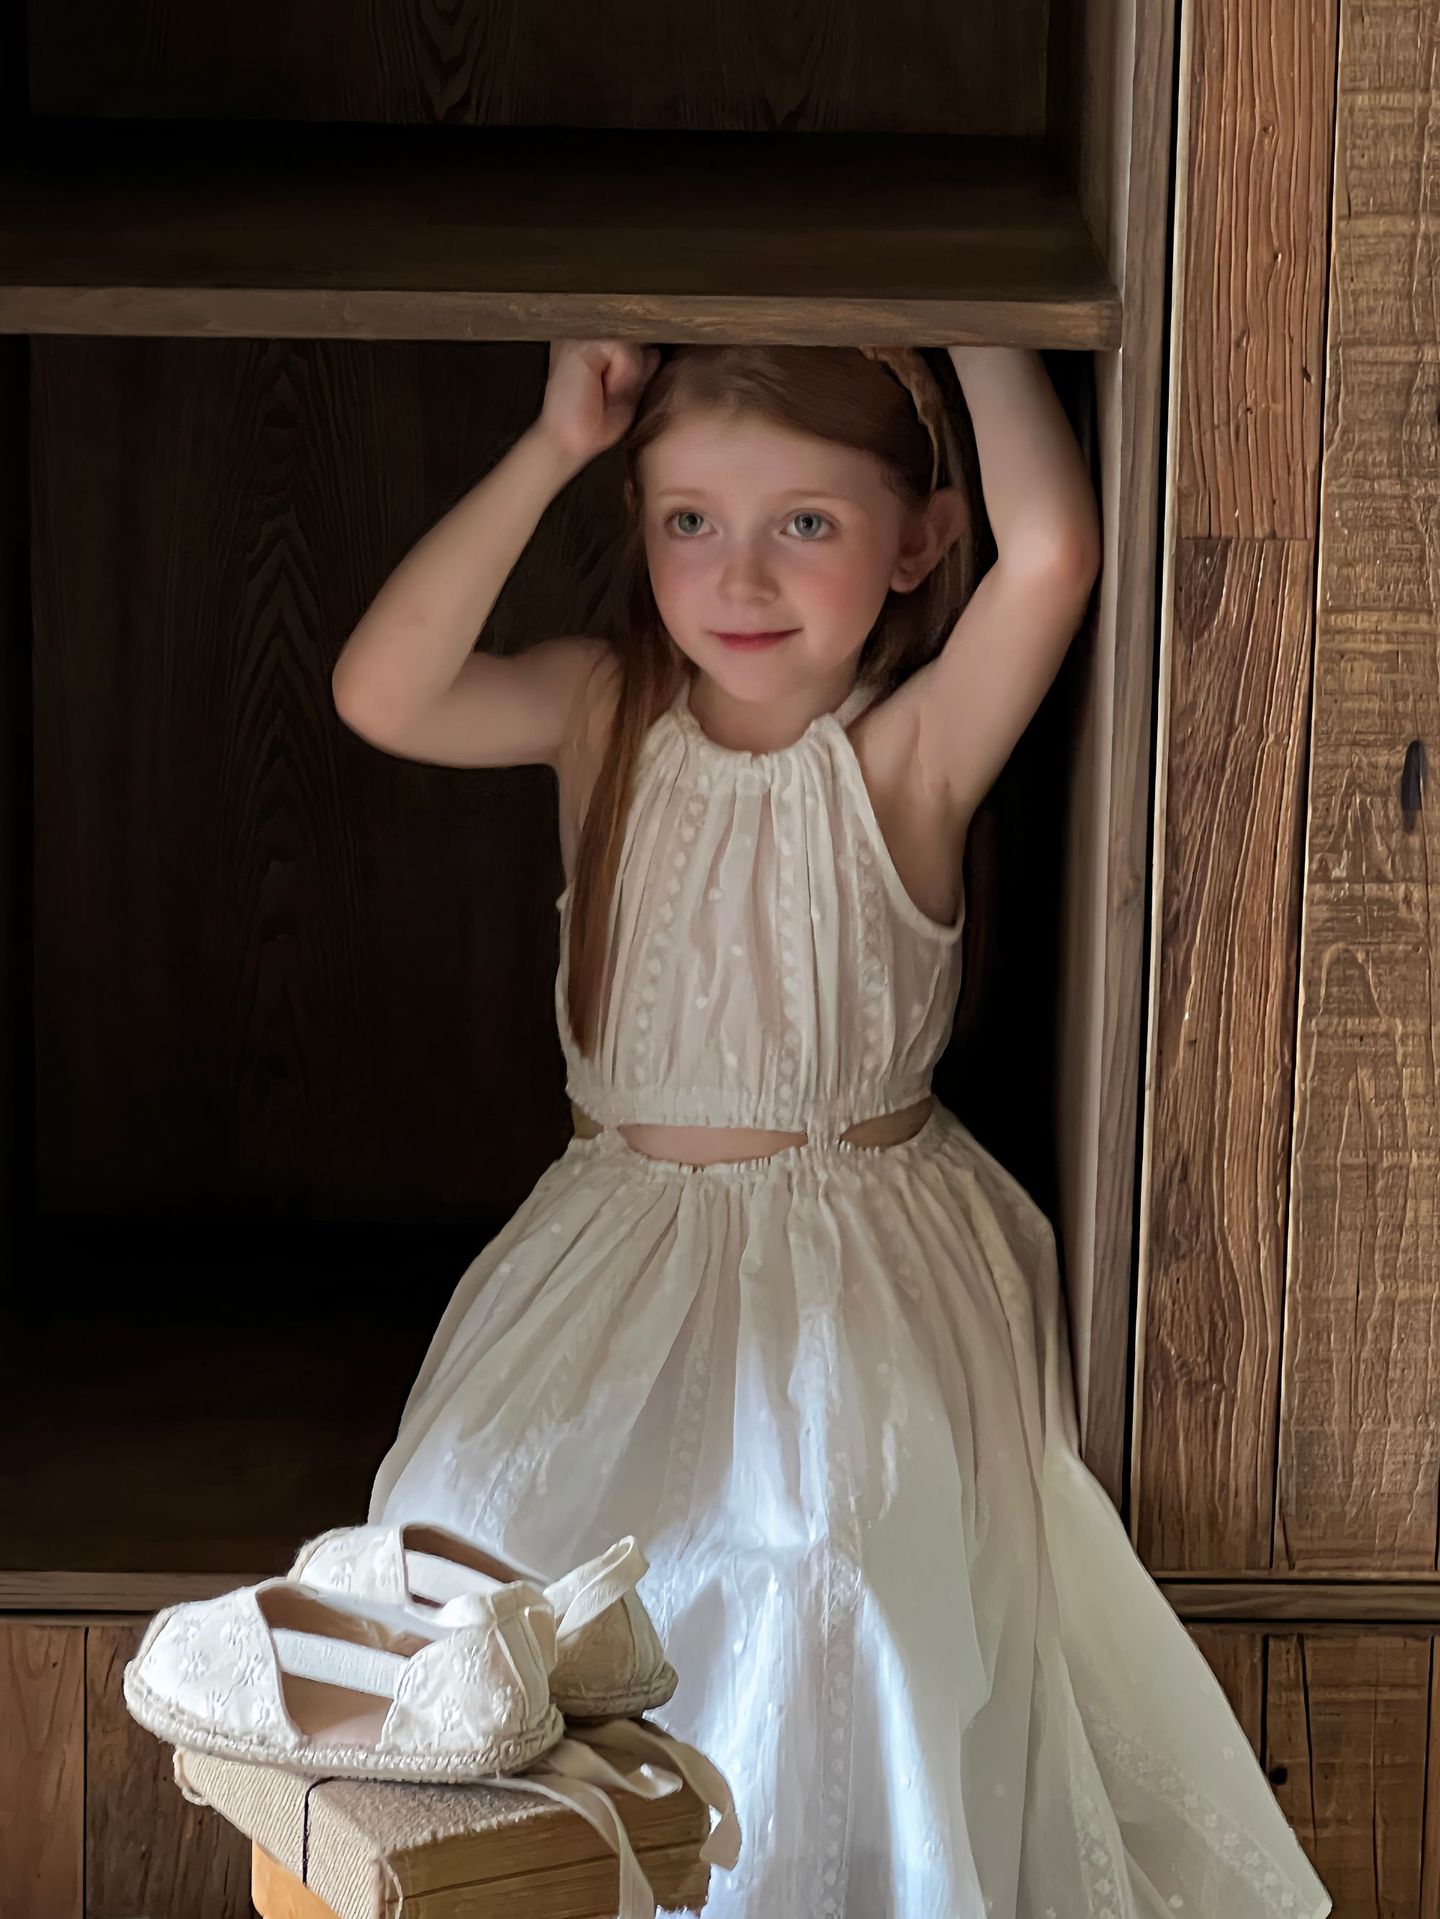 儿童白色夏季连衣裙